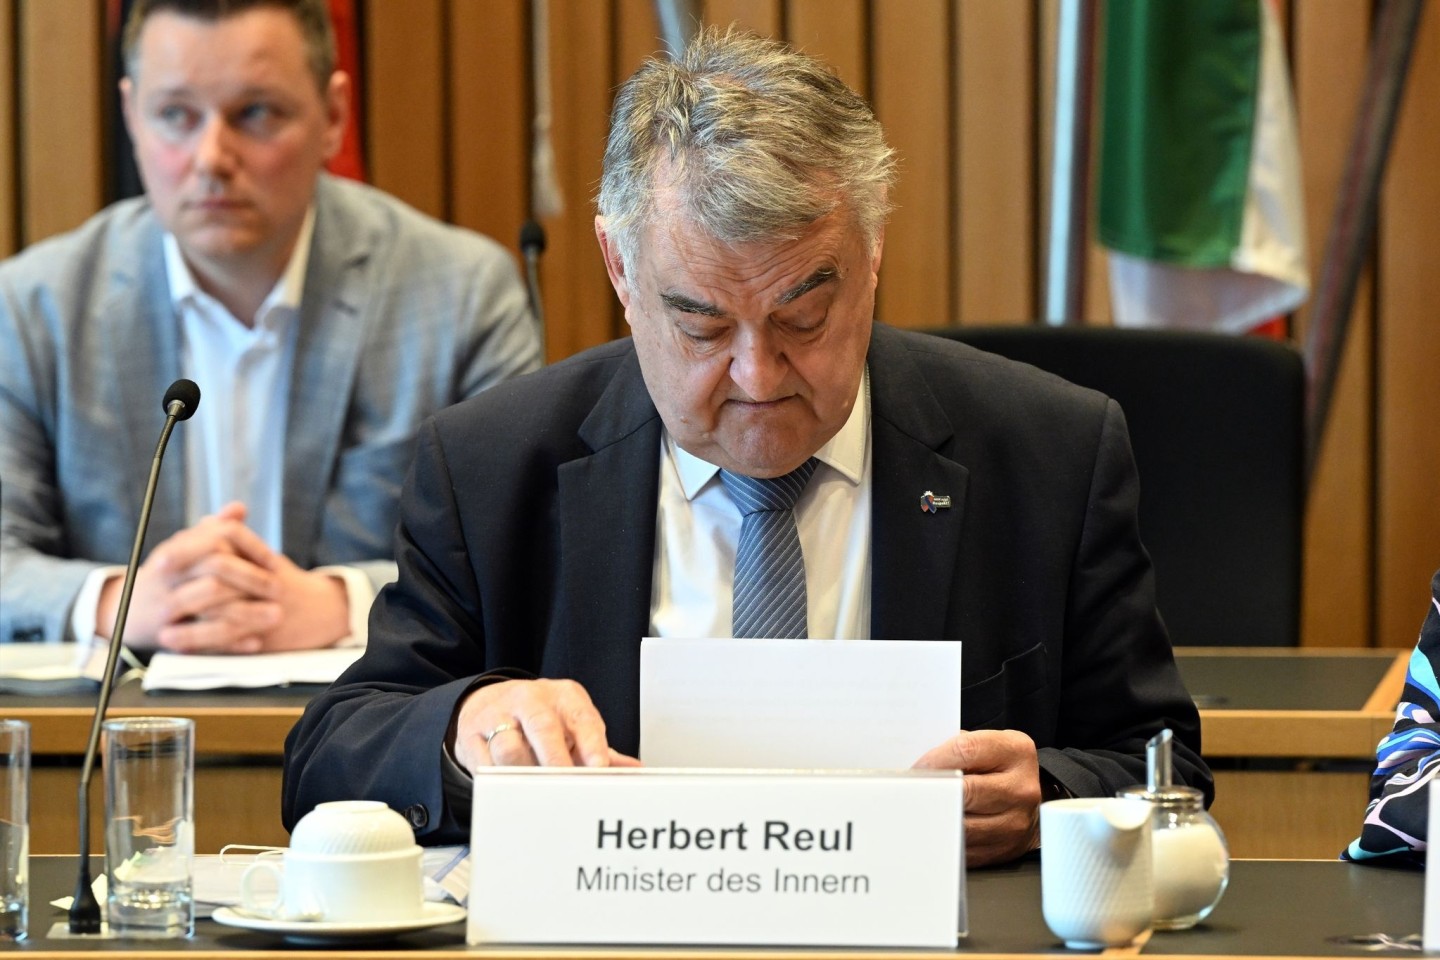 NRW-Innenminister Herbert Reul in der Sitzung des Innenausschusses in Düsseldorf.